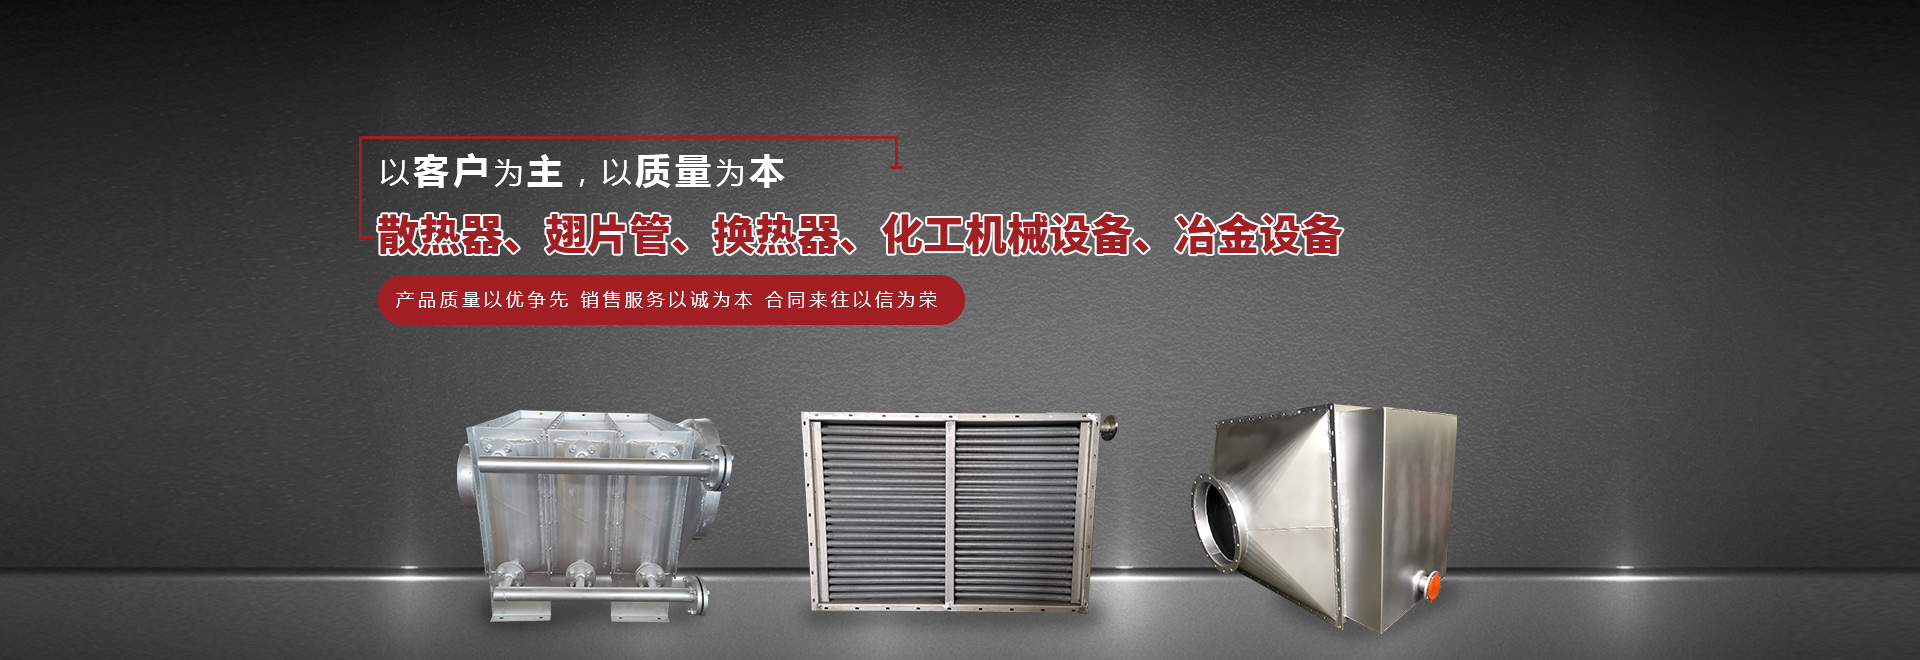 翅片管散热器、钢制散热器、钢制散热器型号产品详情